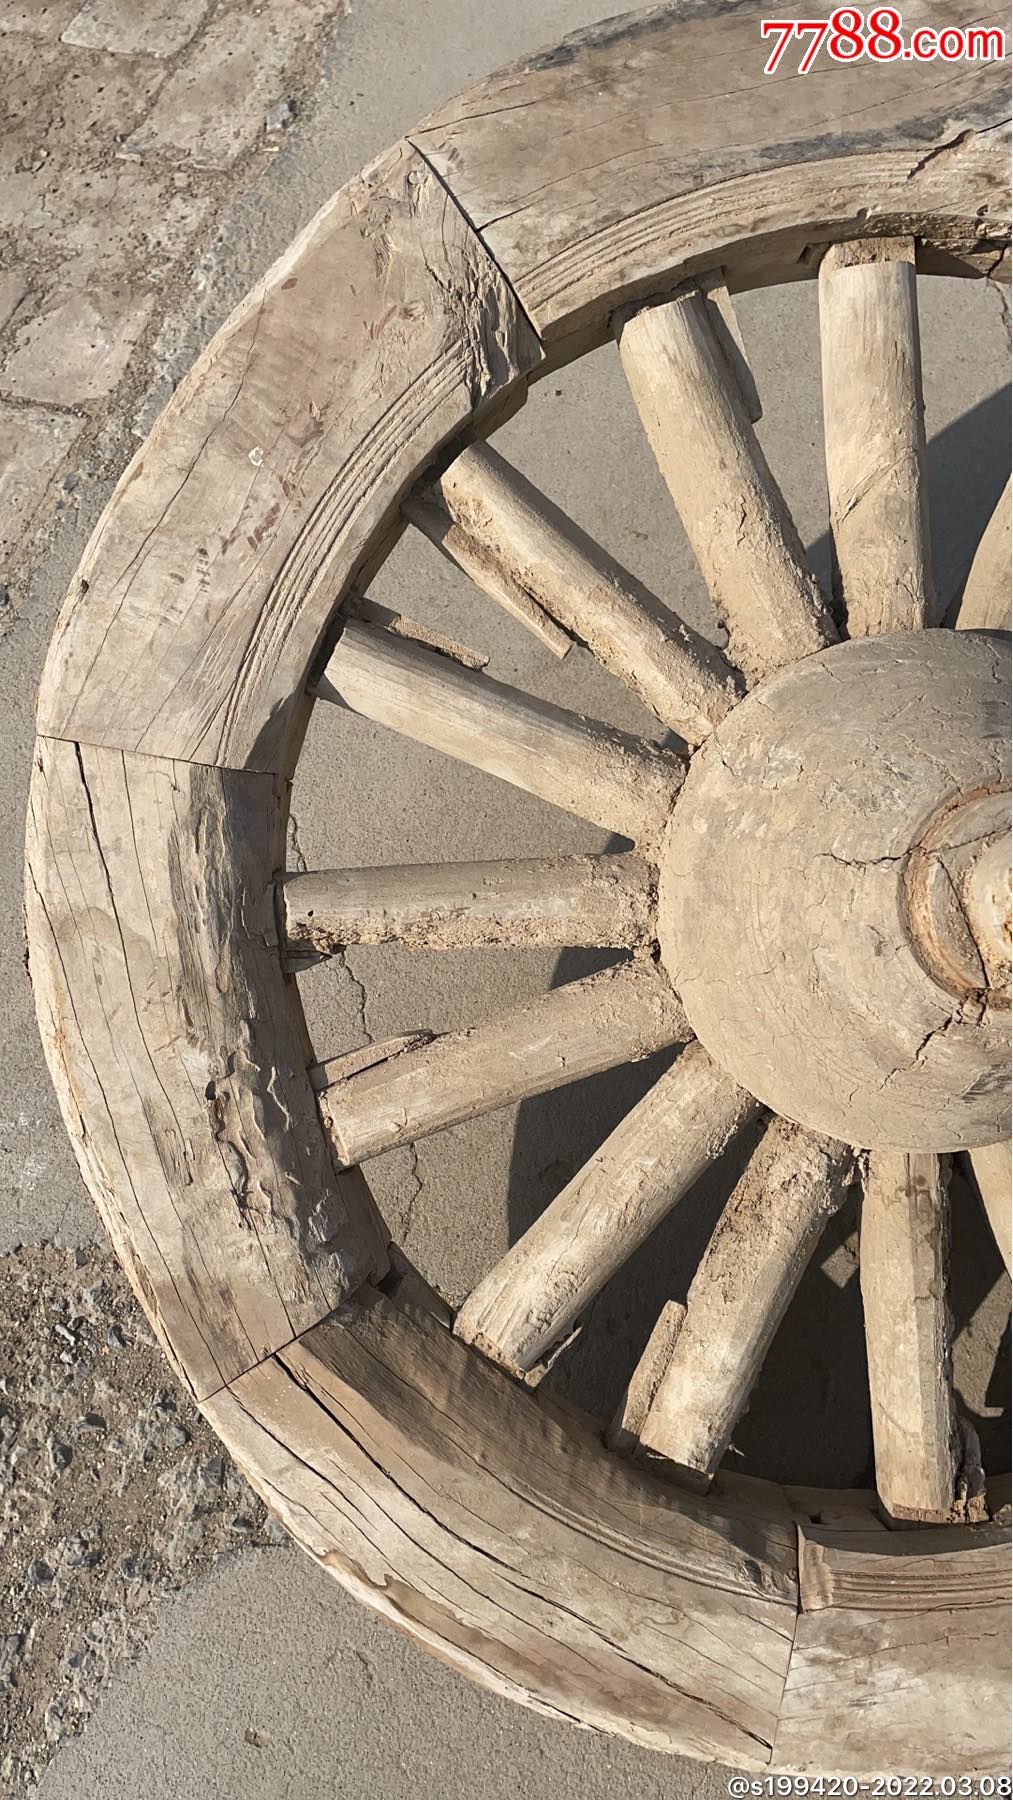 古代木车轮制作流程图片